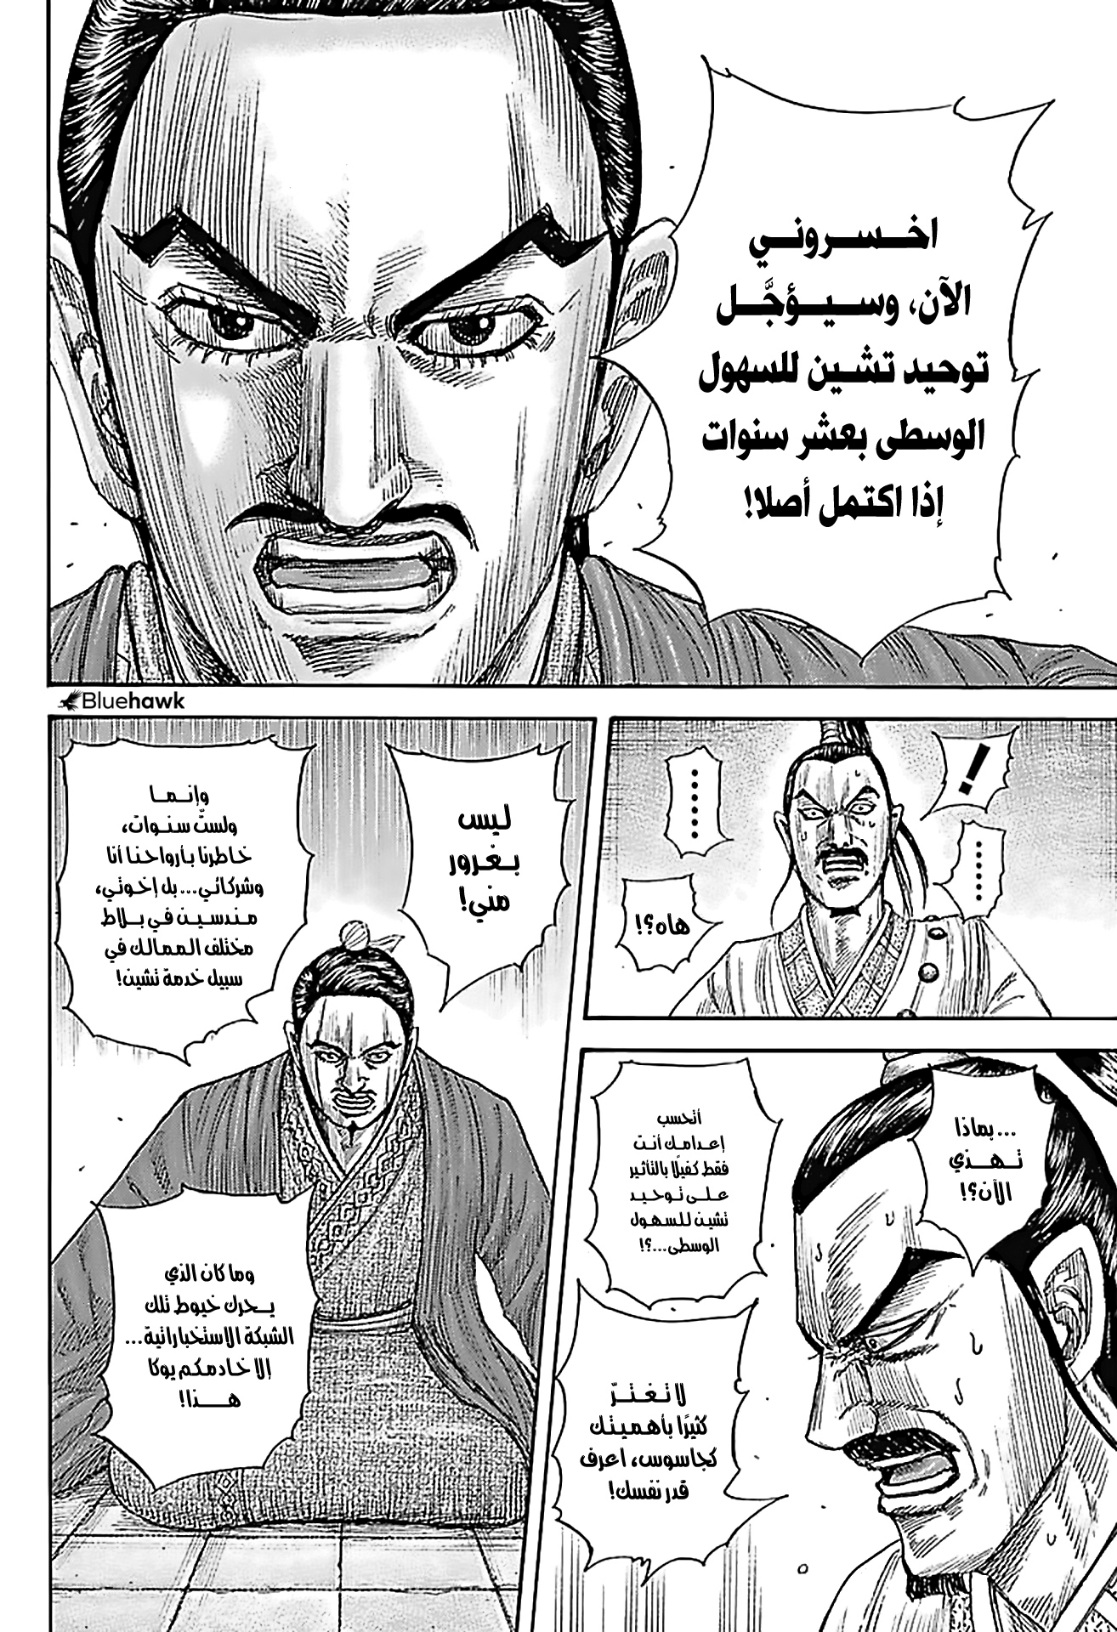 مانجا كينجدوم الفصل 765 Manga Kingdom Chapter اون لاين - هلا مانجا ...